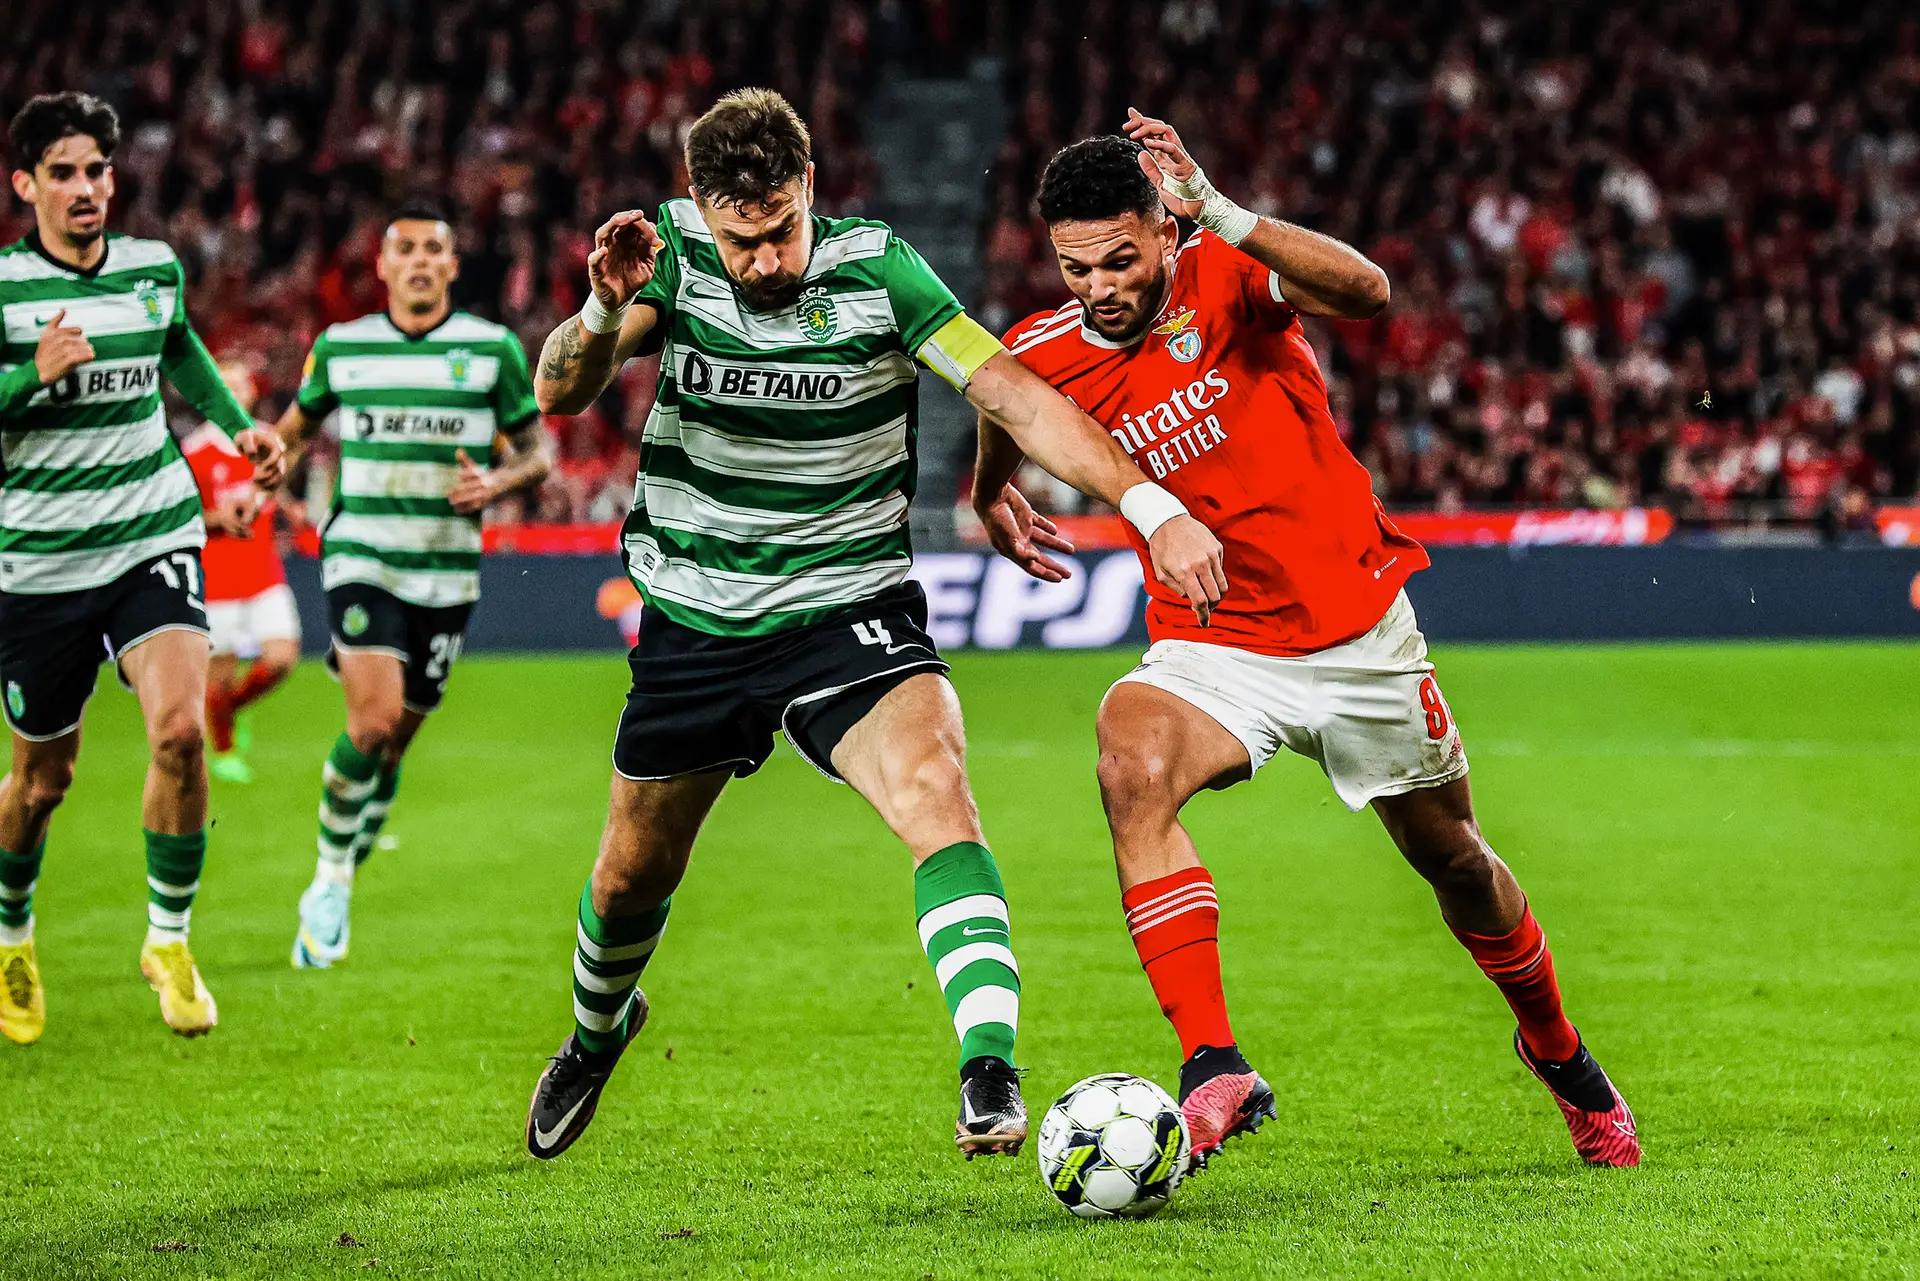 Futebol: Sporting CP na liderança, SL Benfica e FC Porto partilham 2° lugar